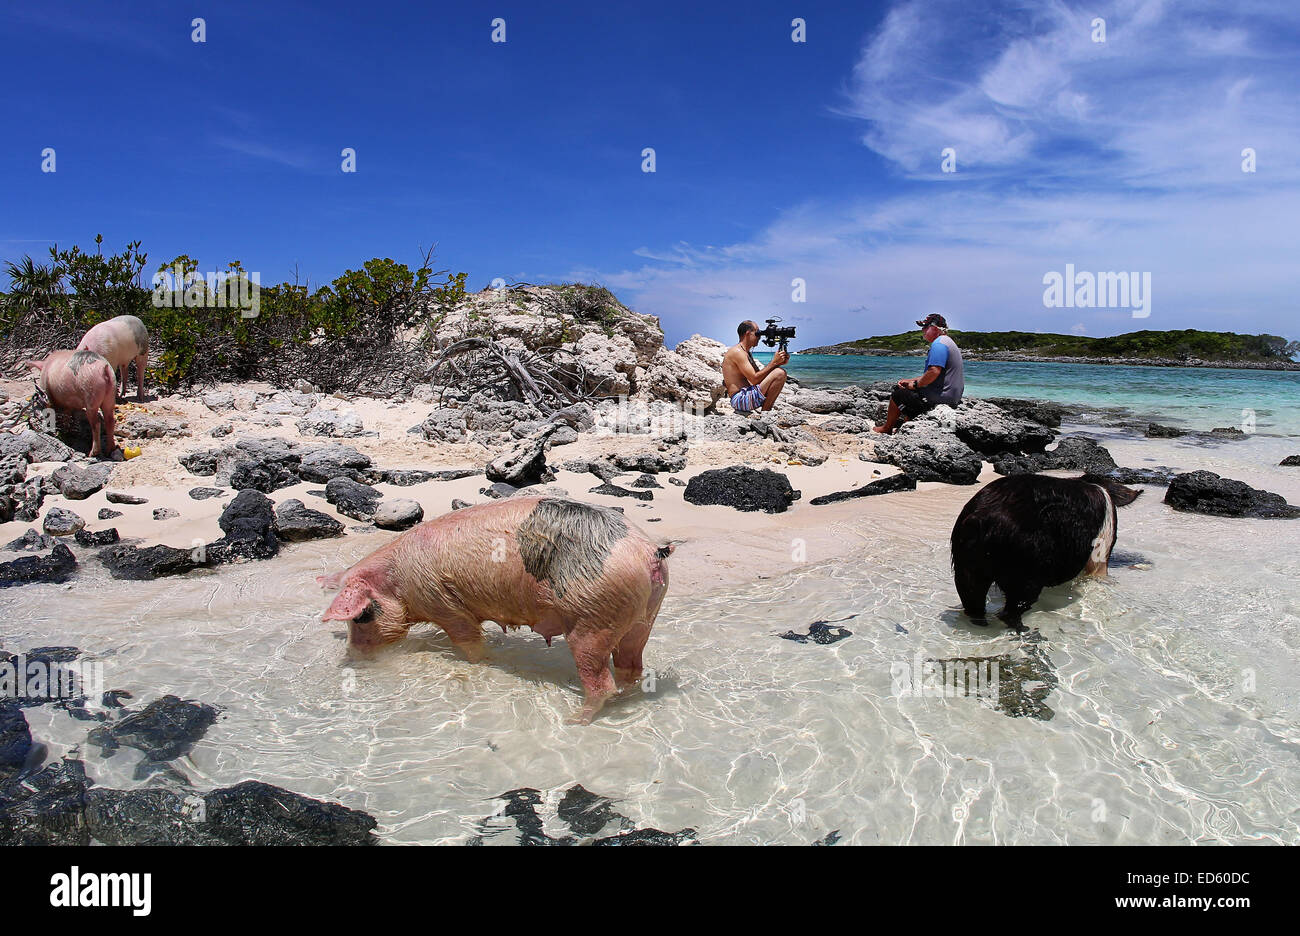 Свинья кайфует. Остров Пиг Бич Багамы. Остров Эксума Багамы свинки. Багамские острова свинки. Пиг-Бич остров свиней.